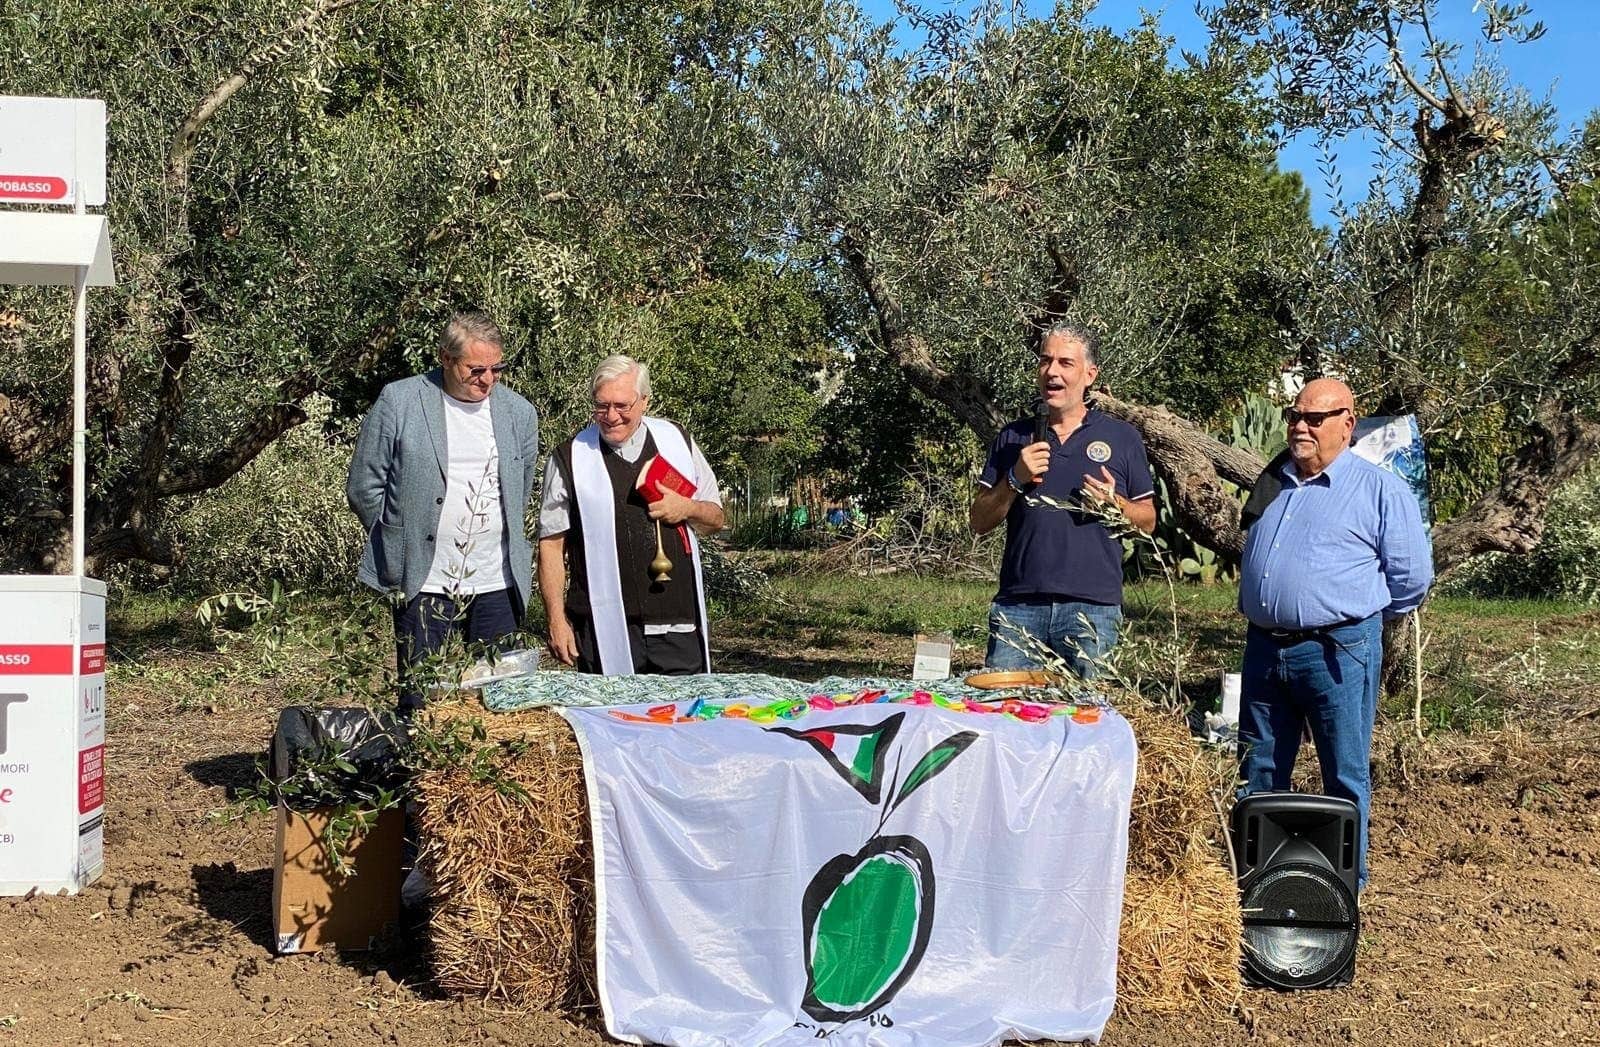 briefs-sorten-neuer-park-in-molise-fördert-olivenbaum-biodiversität-soziale-eingliederung-olivenöl-zeiten